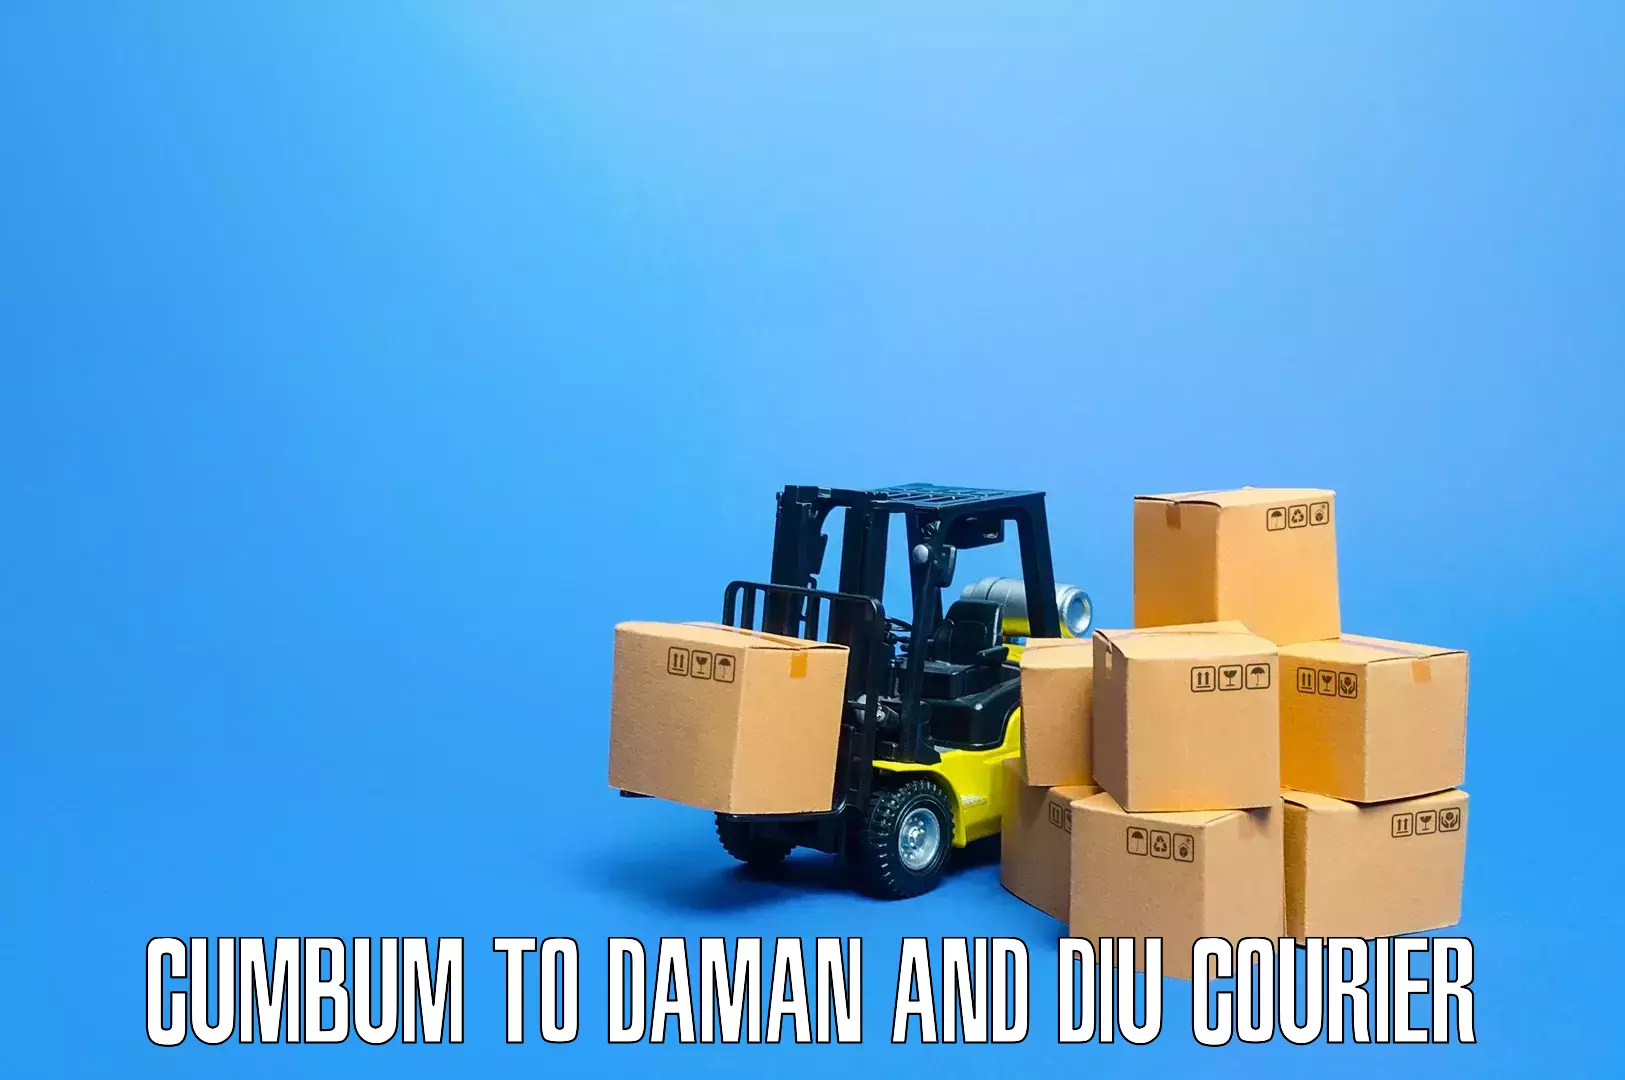 Skilled furniture transporters Cumbum to Daman